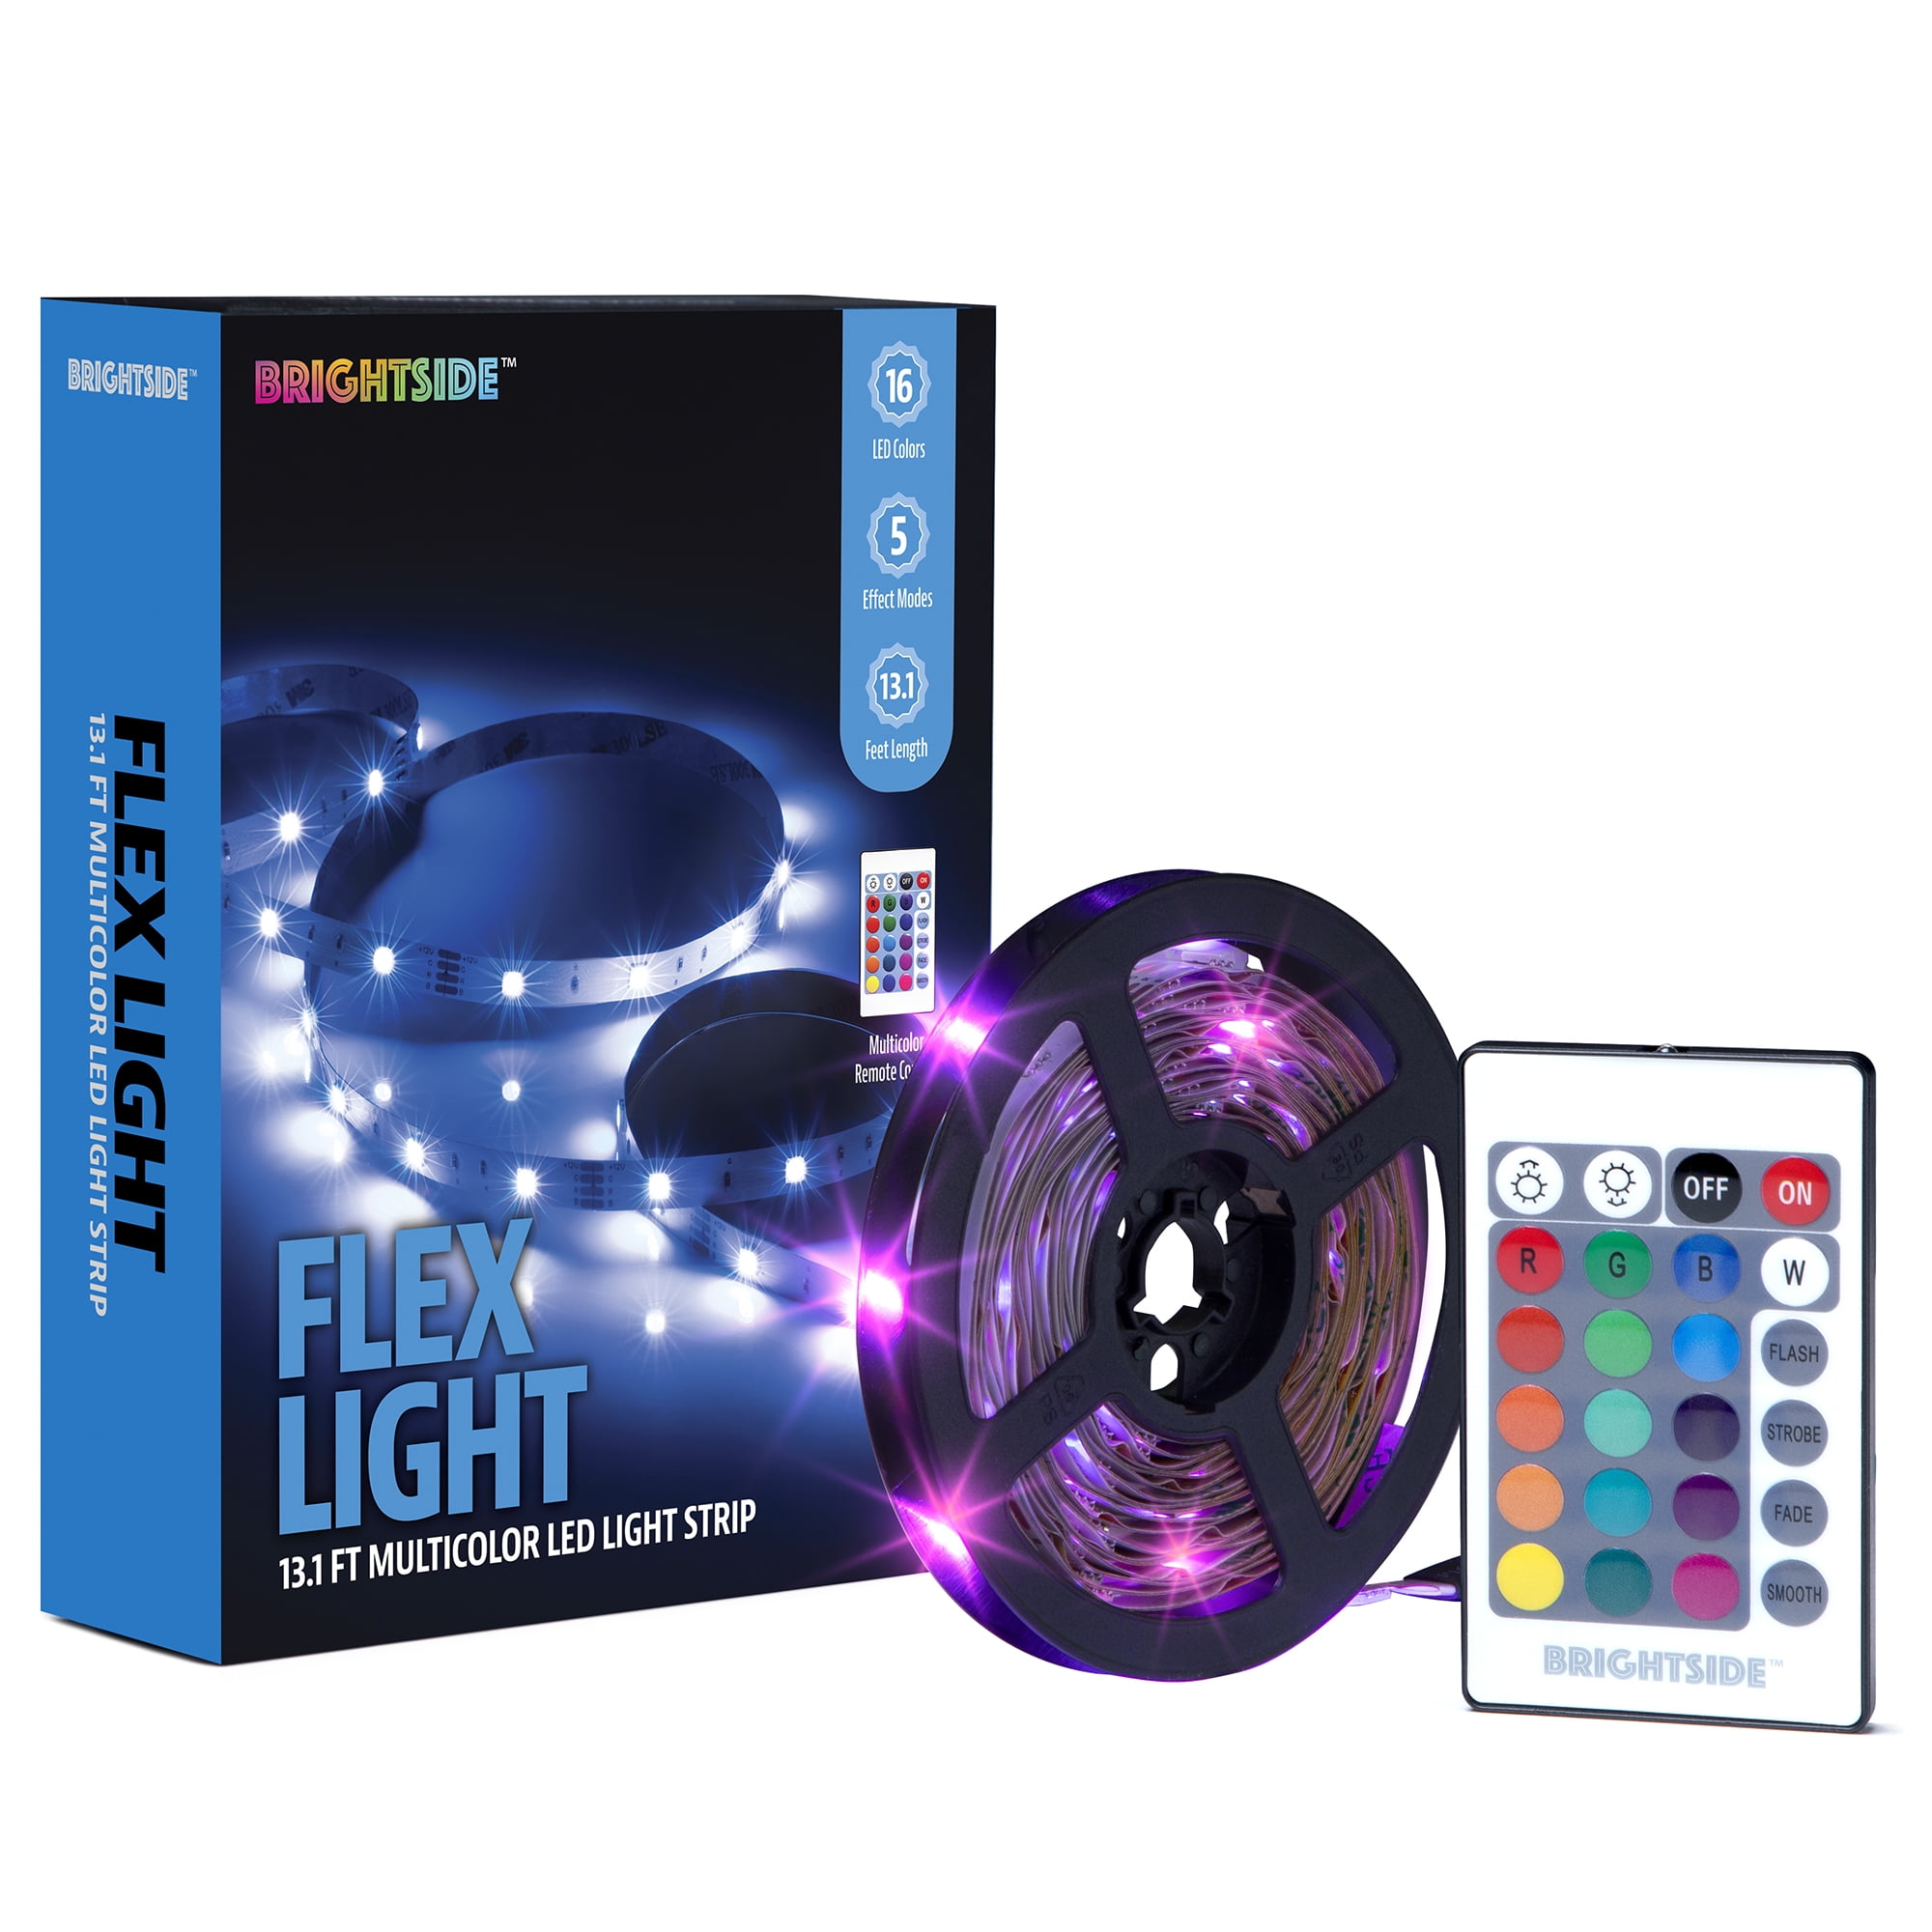 mobil Bliv klar slange Brightside™ Flex Light 13.1 ft. Multi-color LED Light Strip, USB-Powered,  Remote Control, Indoor - Walmart.com